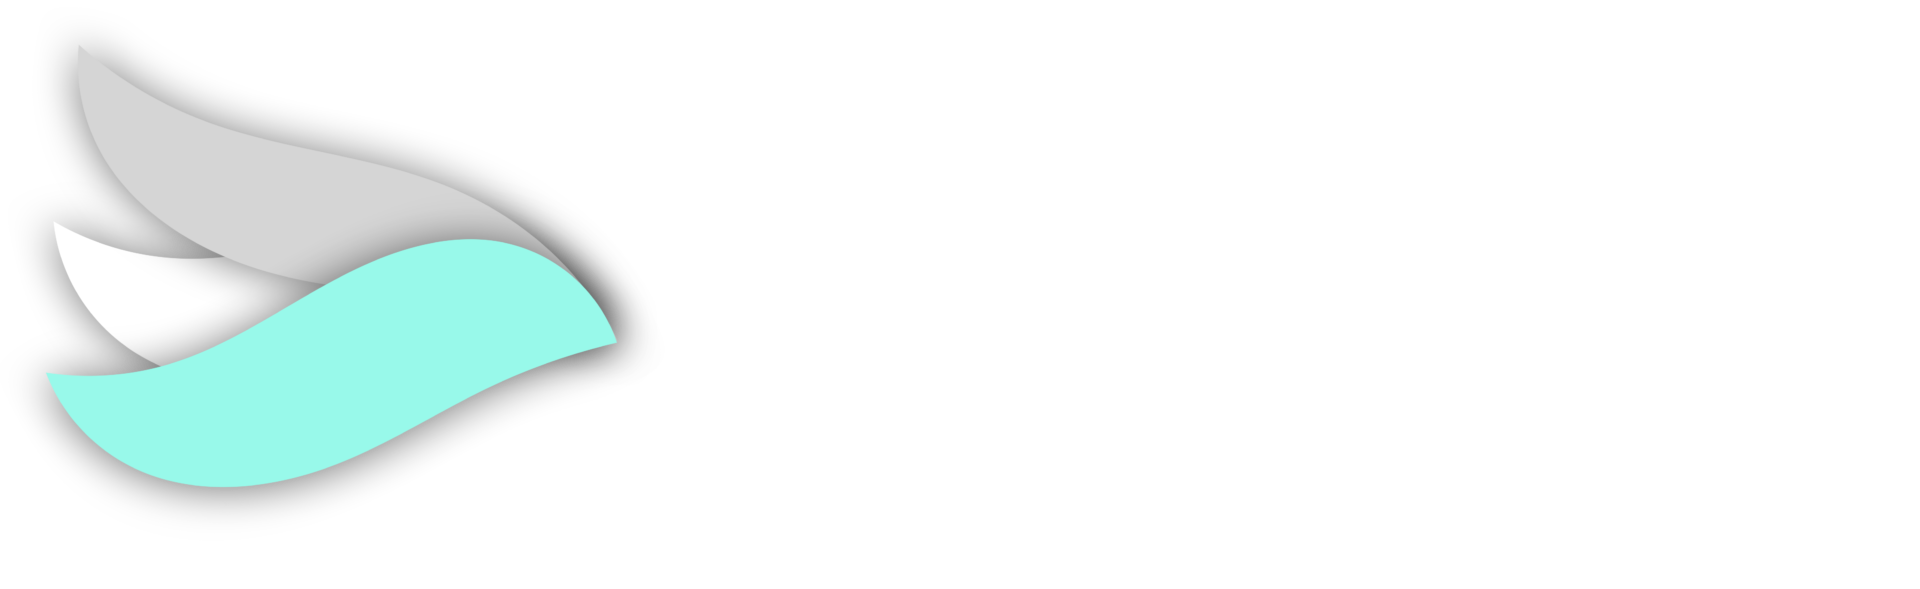 SkytreeDGTL